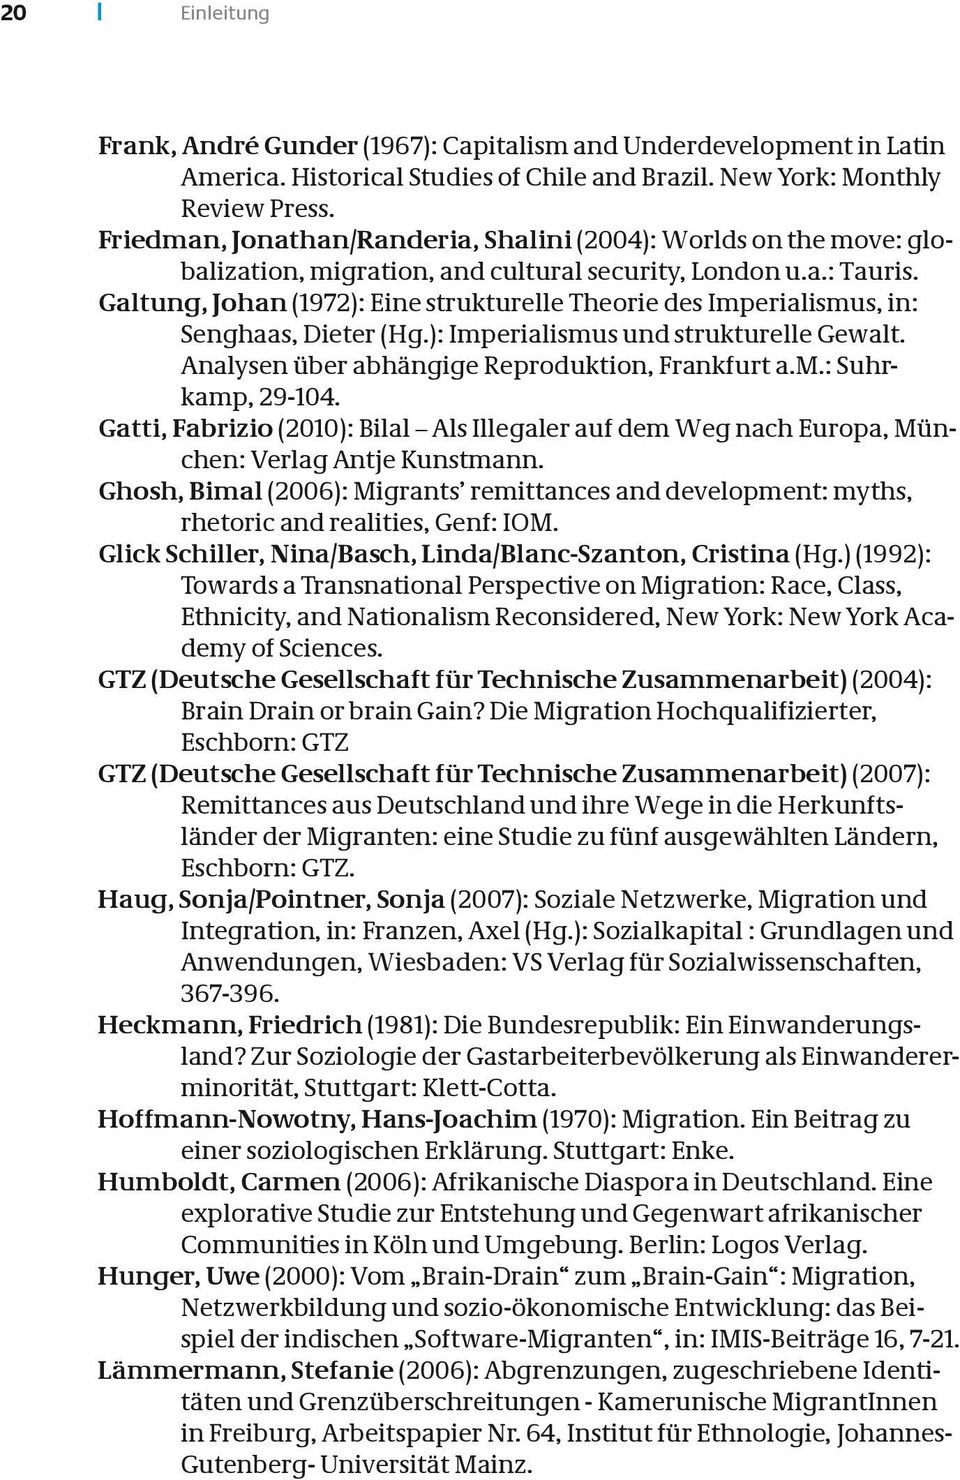 Galtung, Johan (1972): Eine strukturelle Theorie des Imperialismus, in: Senghaas, Dieter (Hg.): Imperialismus und strukturelle Gewalt. Analysen über abhängige Reproduktion, Frankfurt a.m.: Suhrkamp, 29-104.